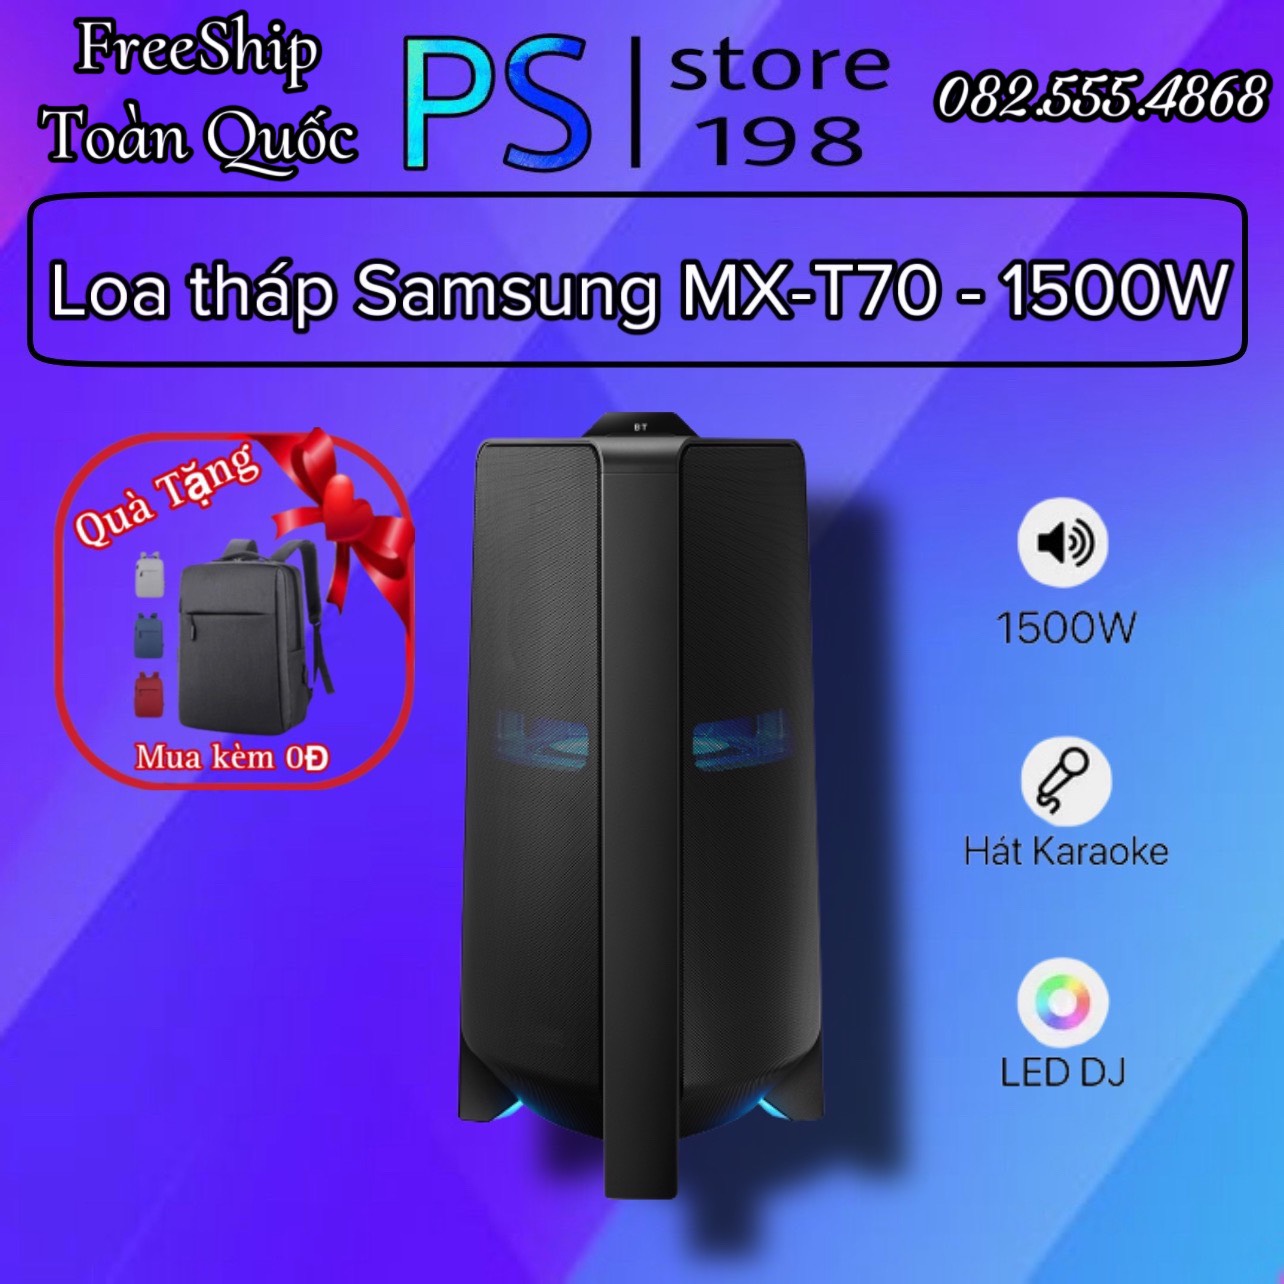 [freeship toàn quốc][Trả góp 0%]Loa Tháp  karaoke Samsung MX-T70/XV 1500W chính hãng